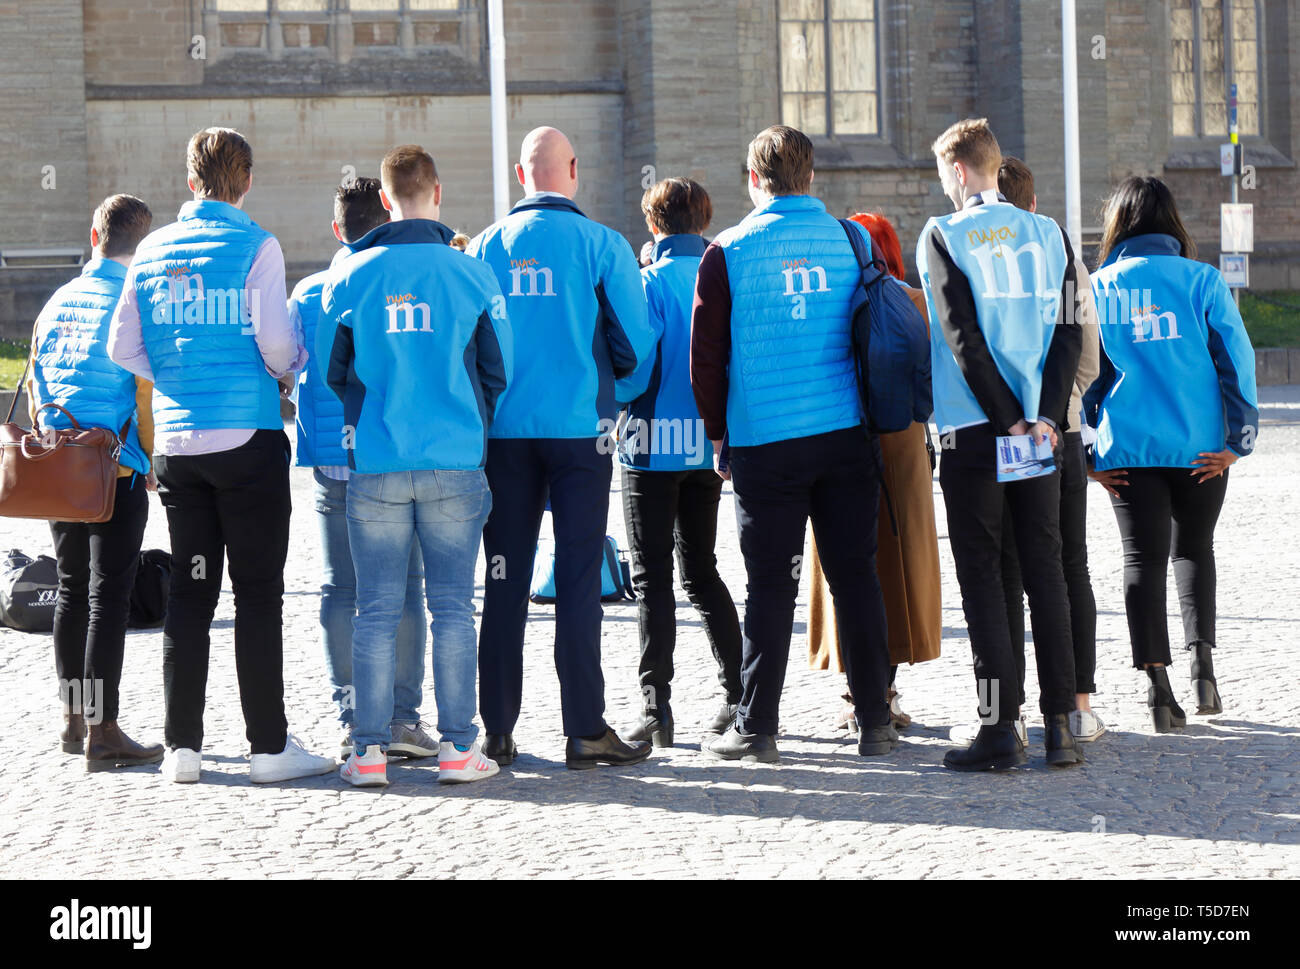 Orebro, Schweden - 17 April, 2019: Mitglieder der schwedischen politischen konservativen Partei Moderaterna mit dem Rücken zur Kamera an der Stadt hal gedreht Stockfoto